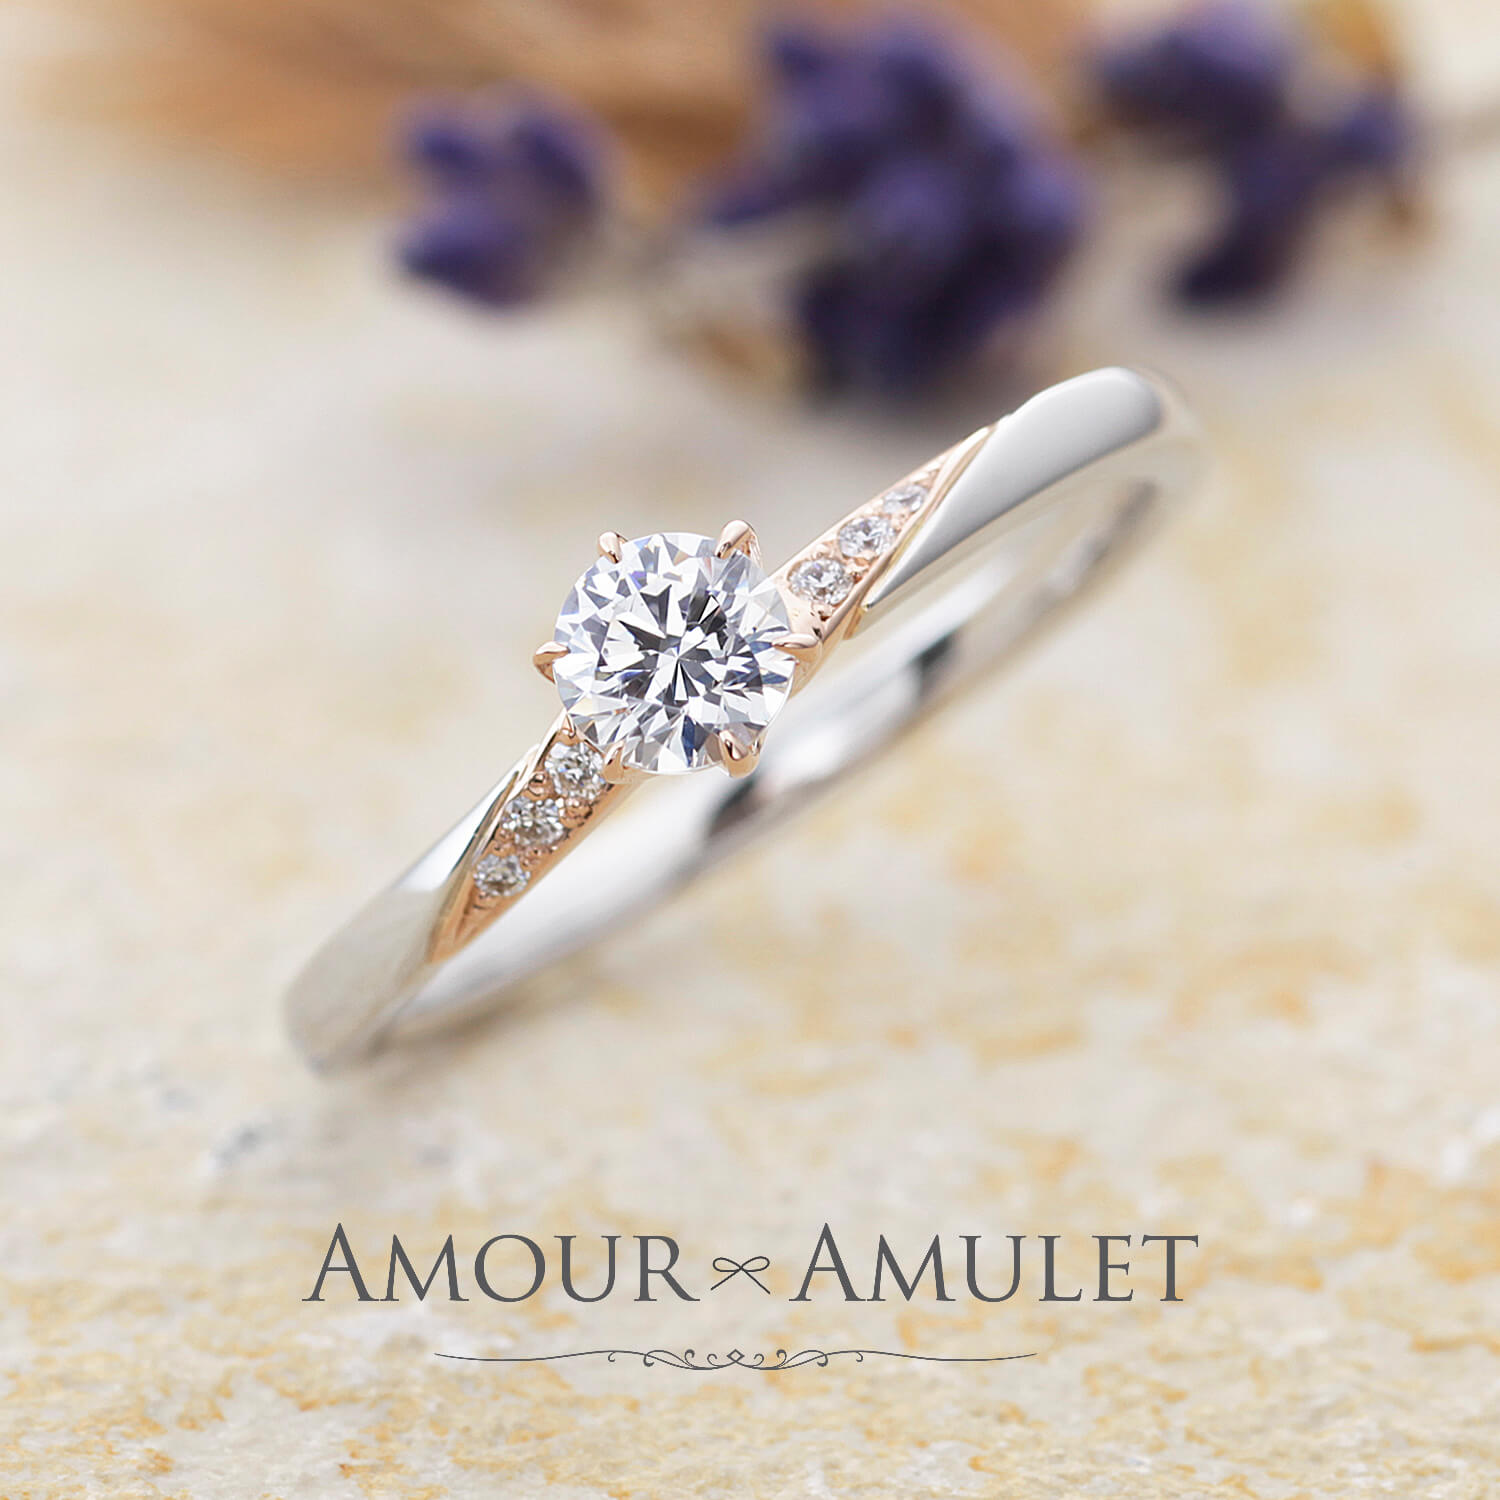 AMOURAMULETアムールアミュレットの婚約指輪MIELミエル